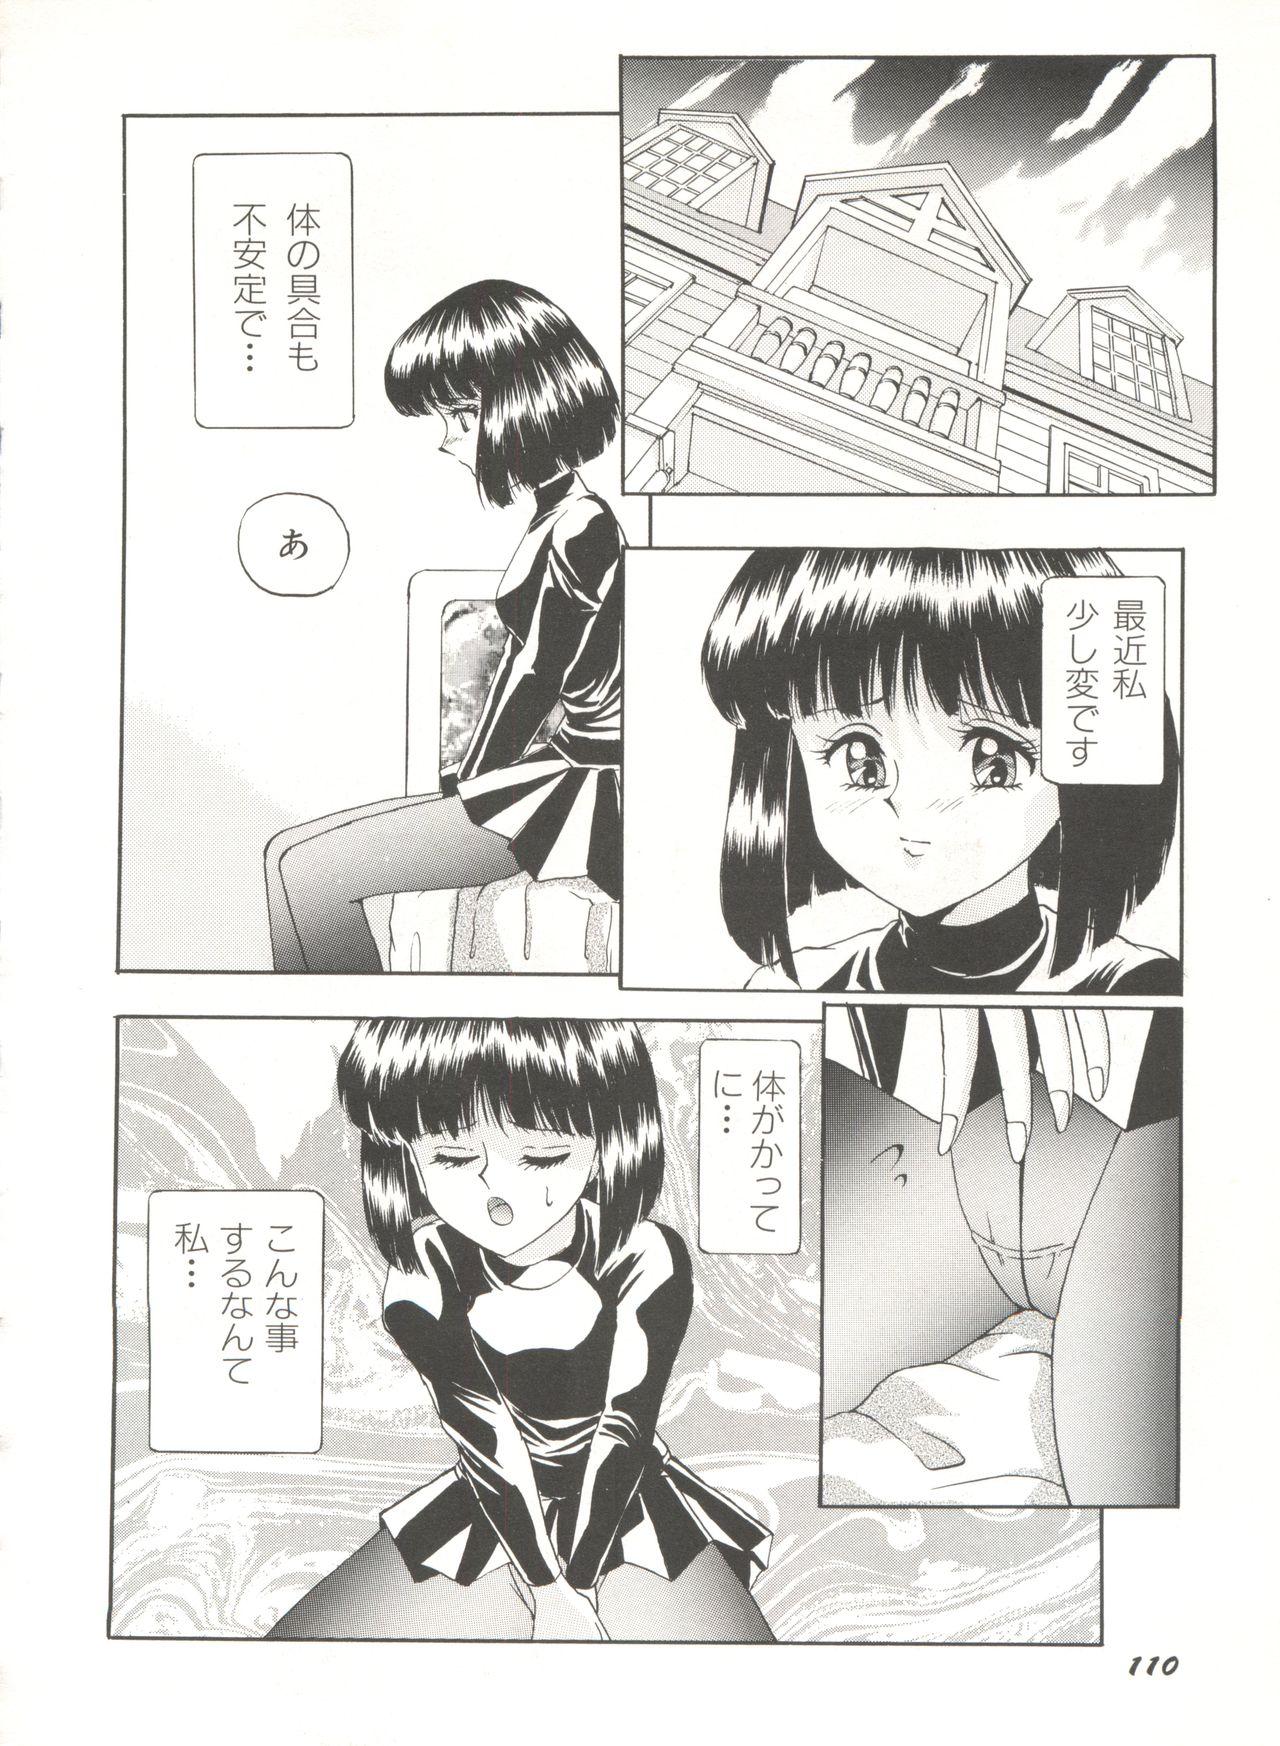 Bishoujo Doujinshi Anthology 16 - Moon Paradise 10 Tsuki no Rakuen 114